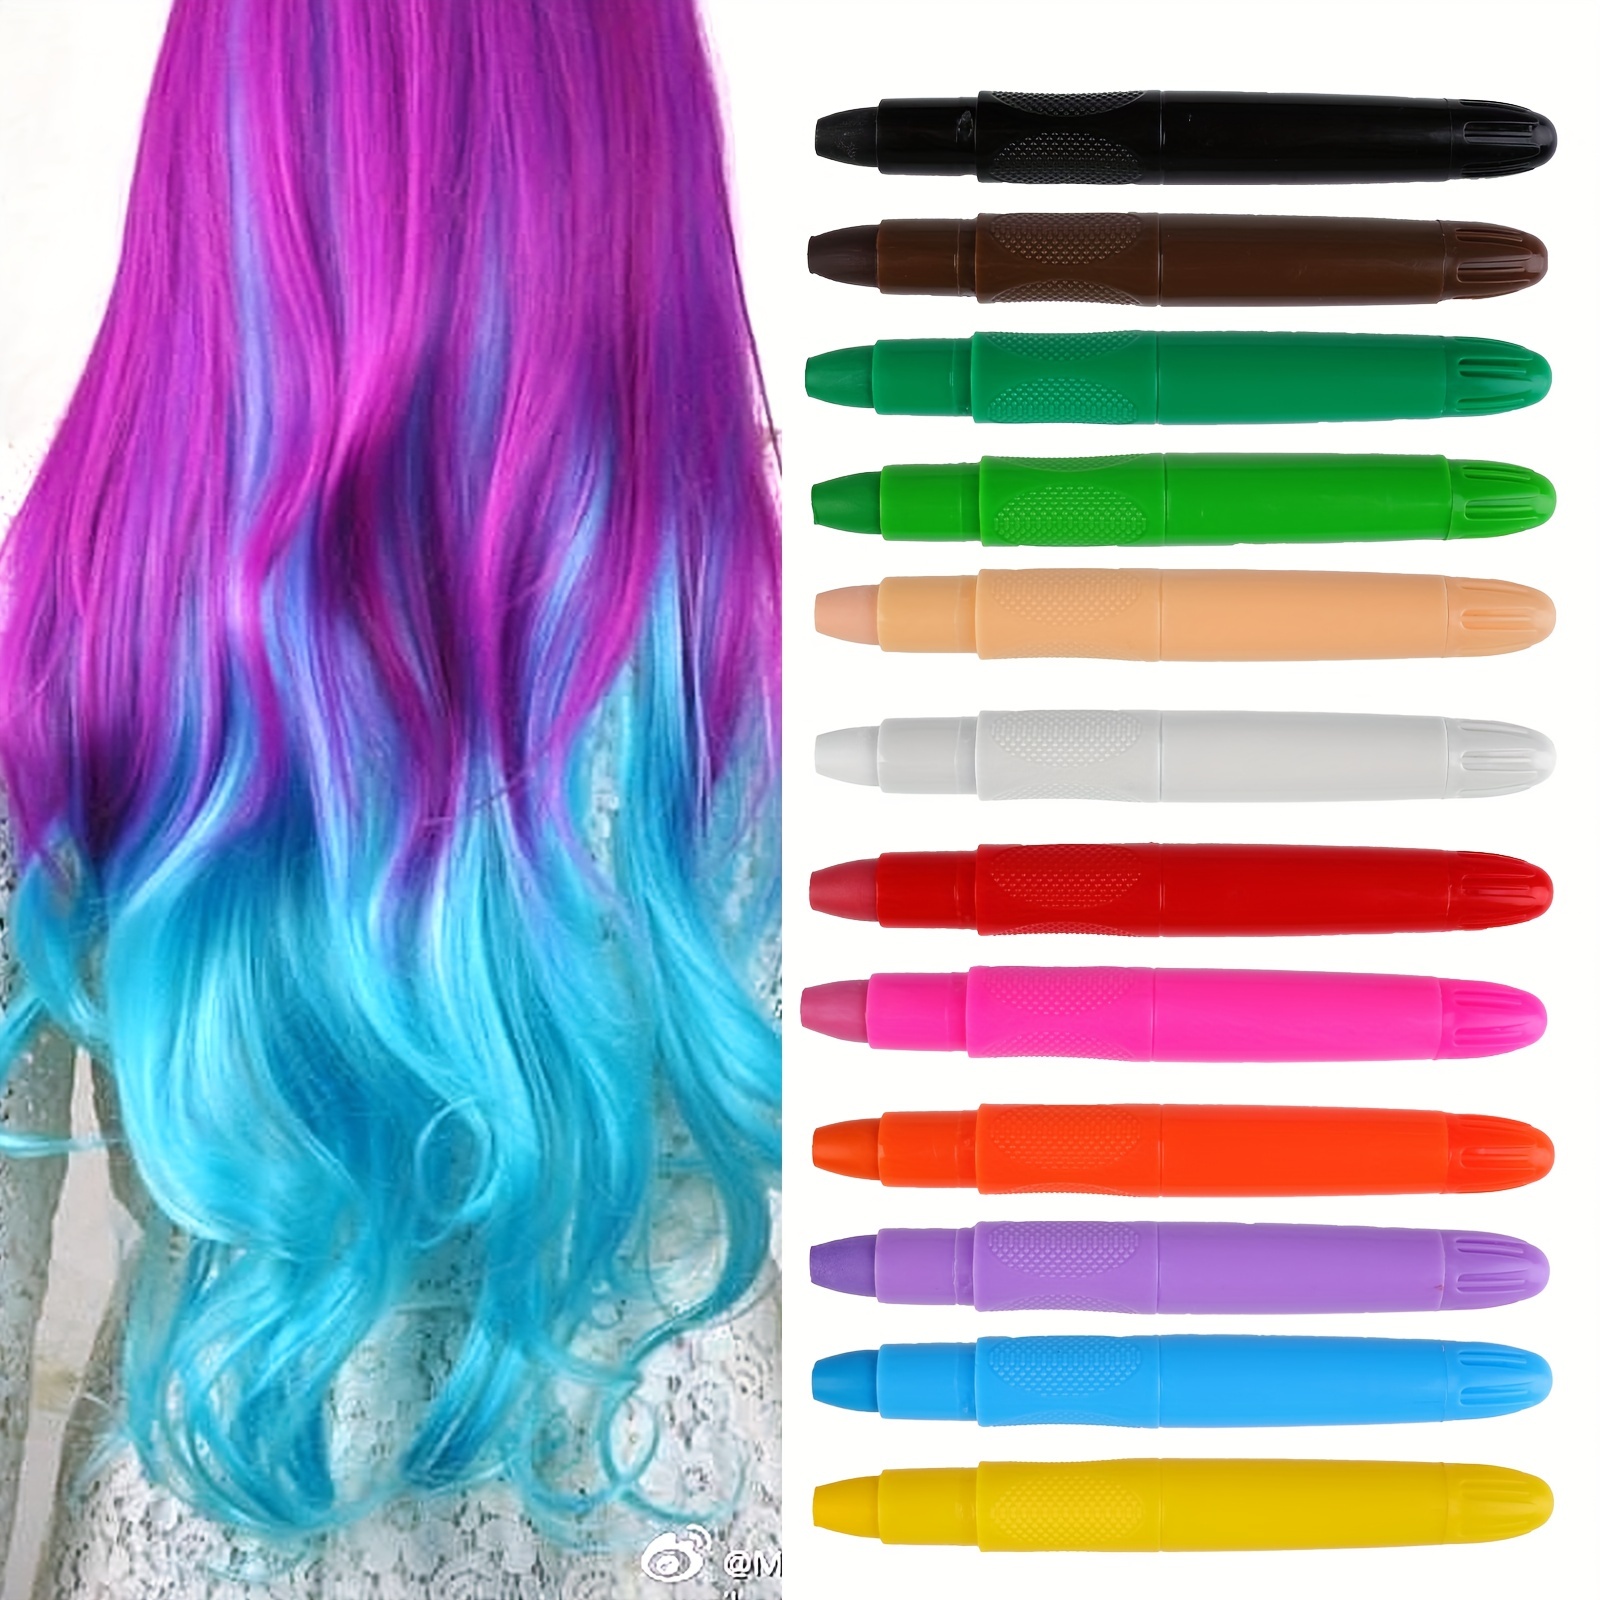 Hair Chalk for Girls, Kids Hair Color Hair Dye for Kids Birthday Gifts for Girls